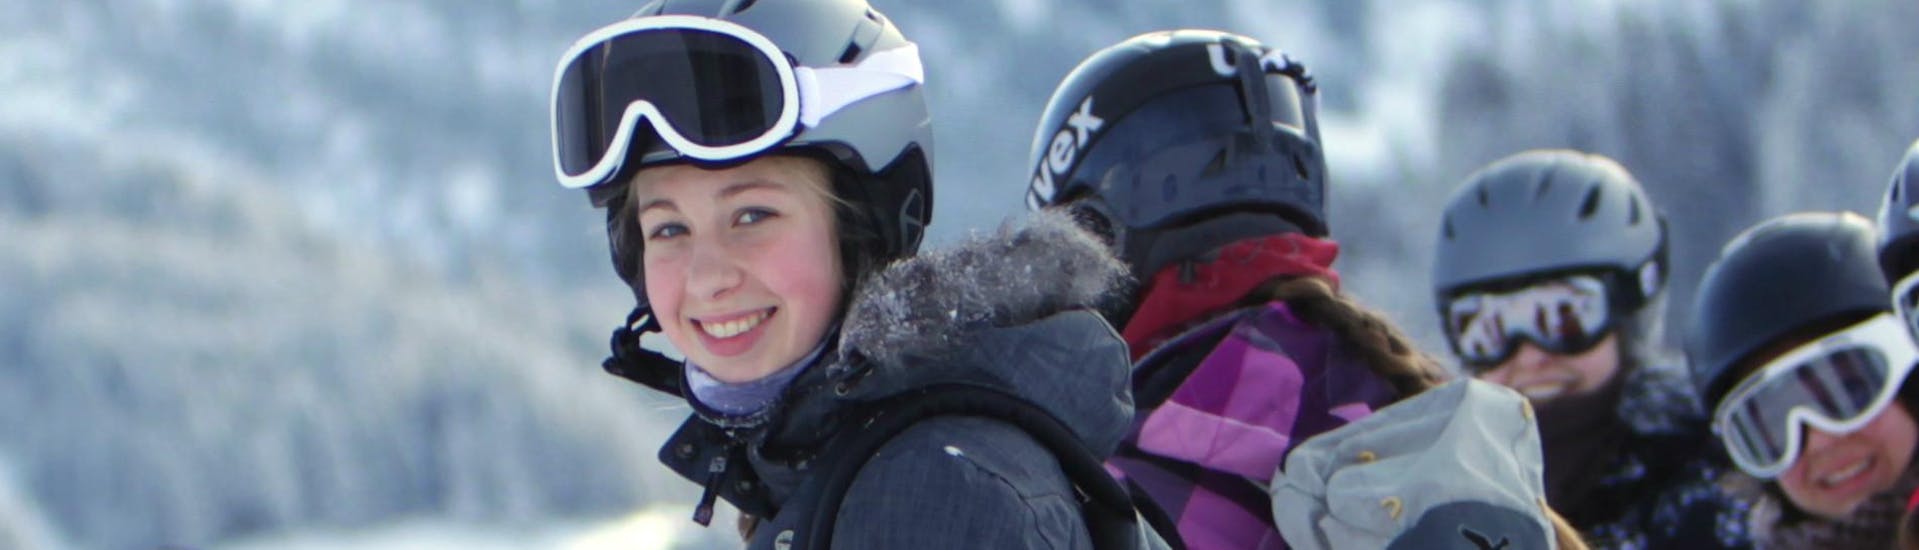 Skikurs für Jugendliche (13-15 J.) für alle Levels.